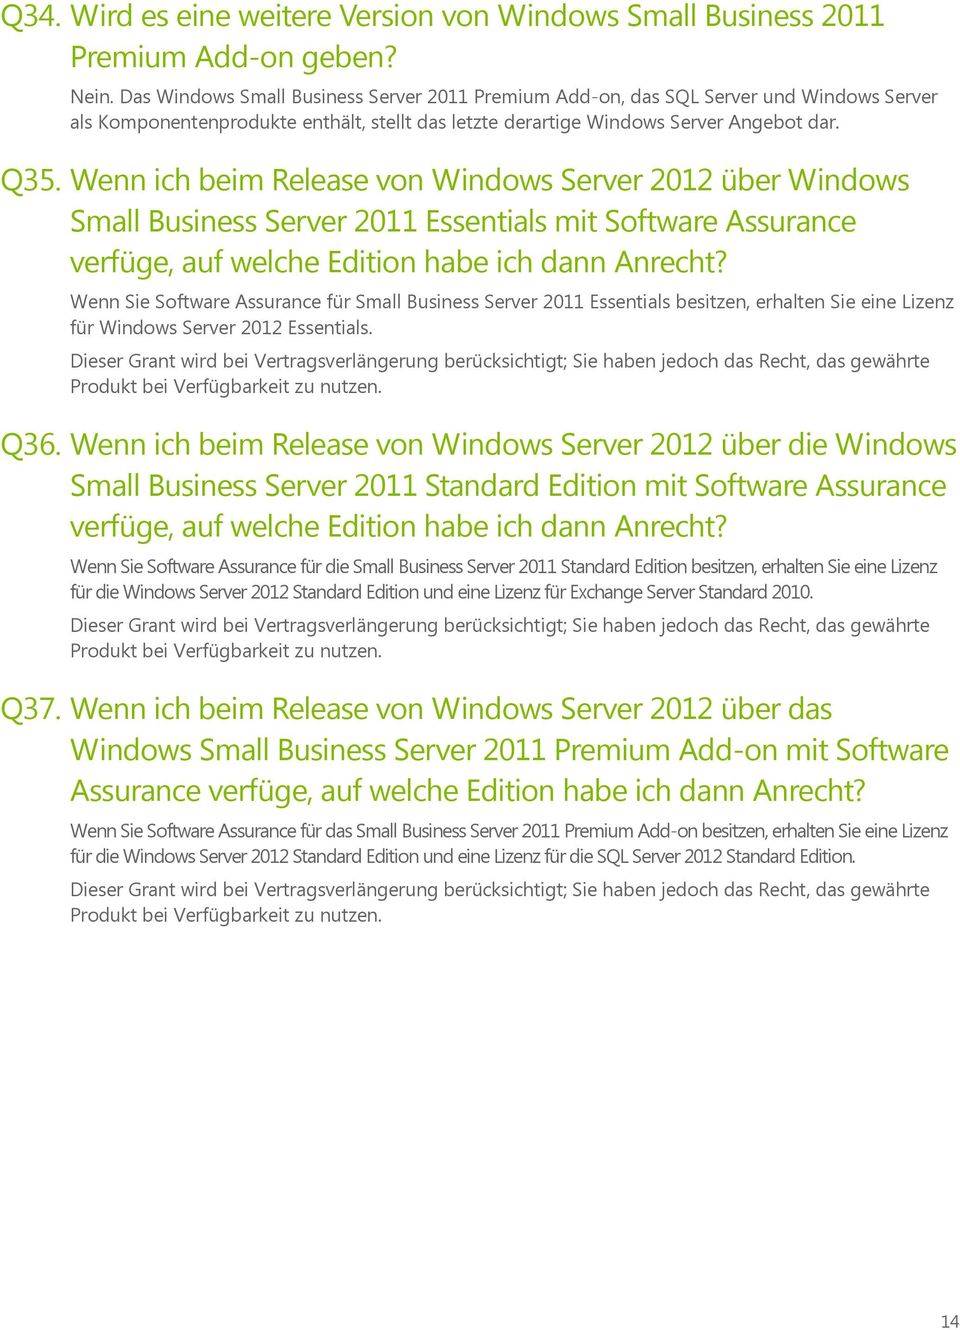 Wenn ich beim Release von Windows Server 2012 über Windows Small Business Server 2011 Essentials mit Software Assurance verfüge, auf welche Edition habe ich dann Anrecht?